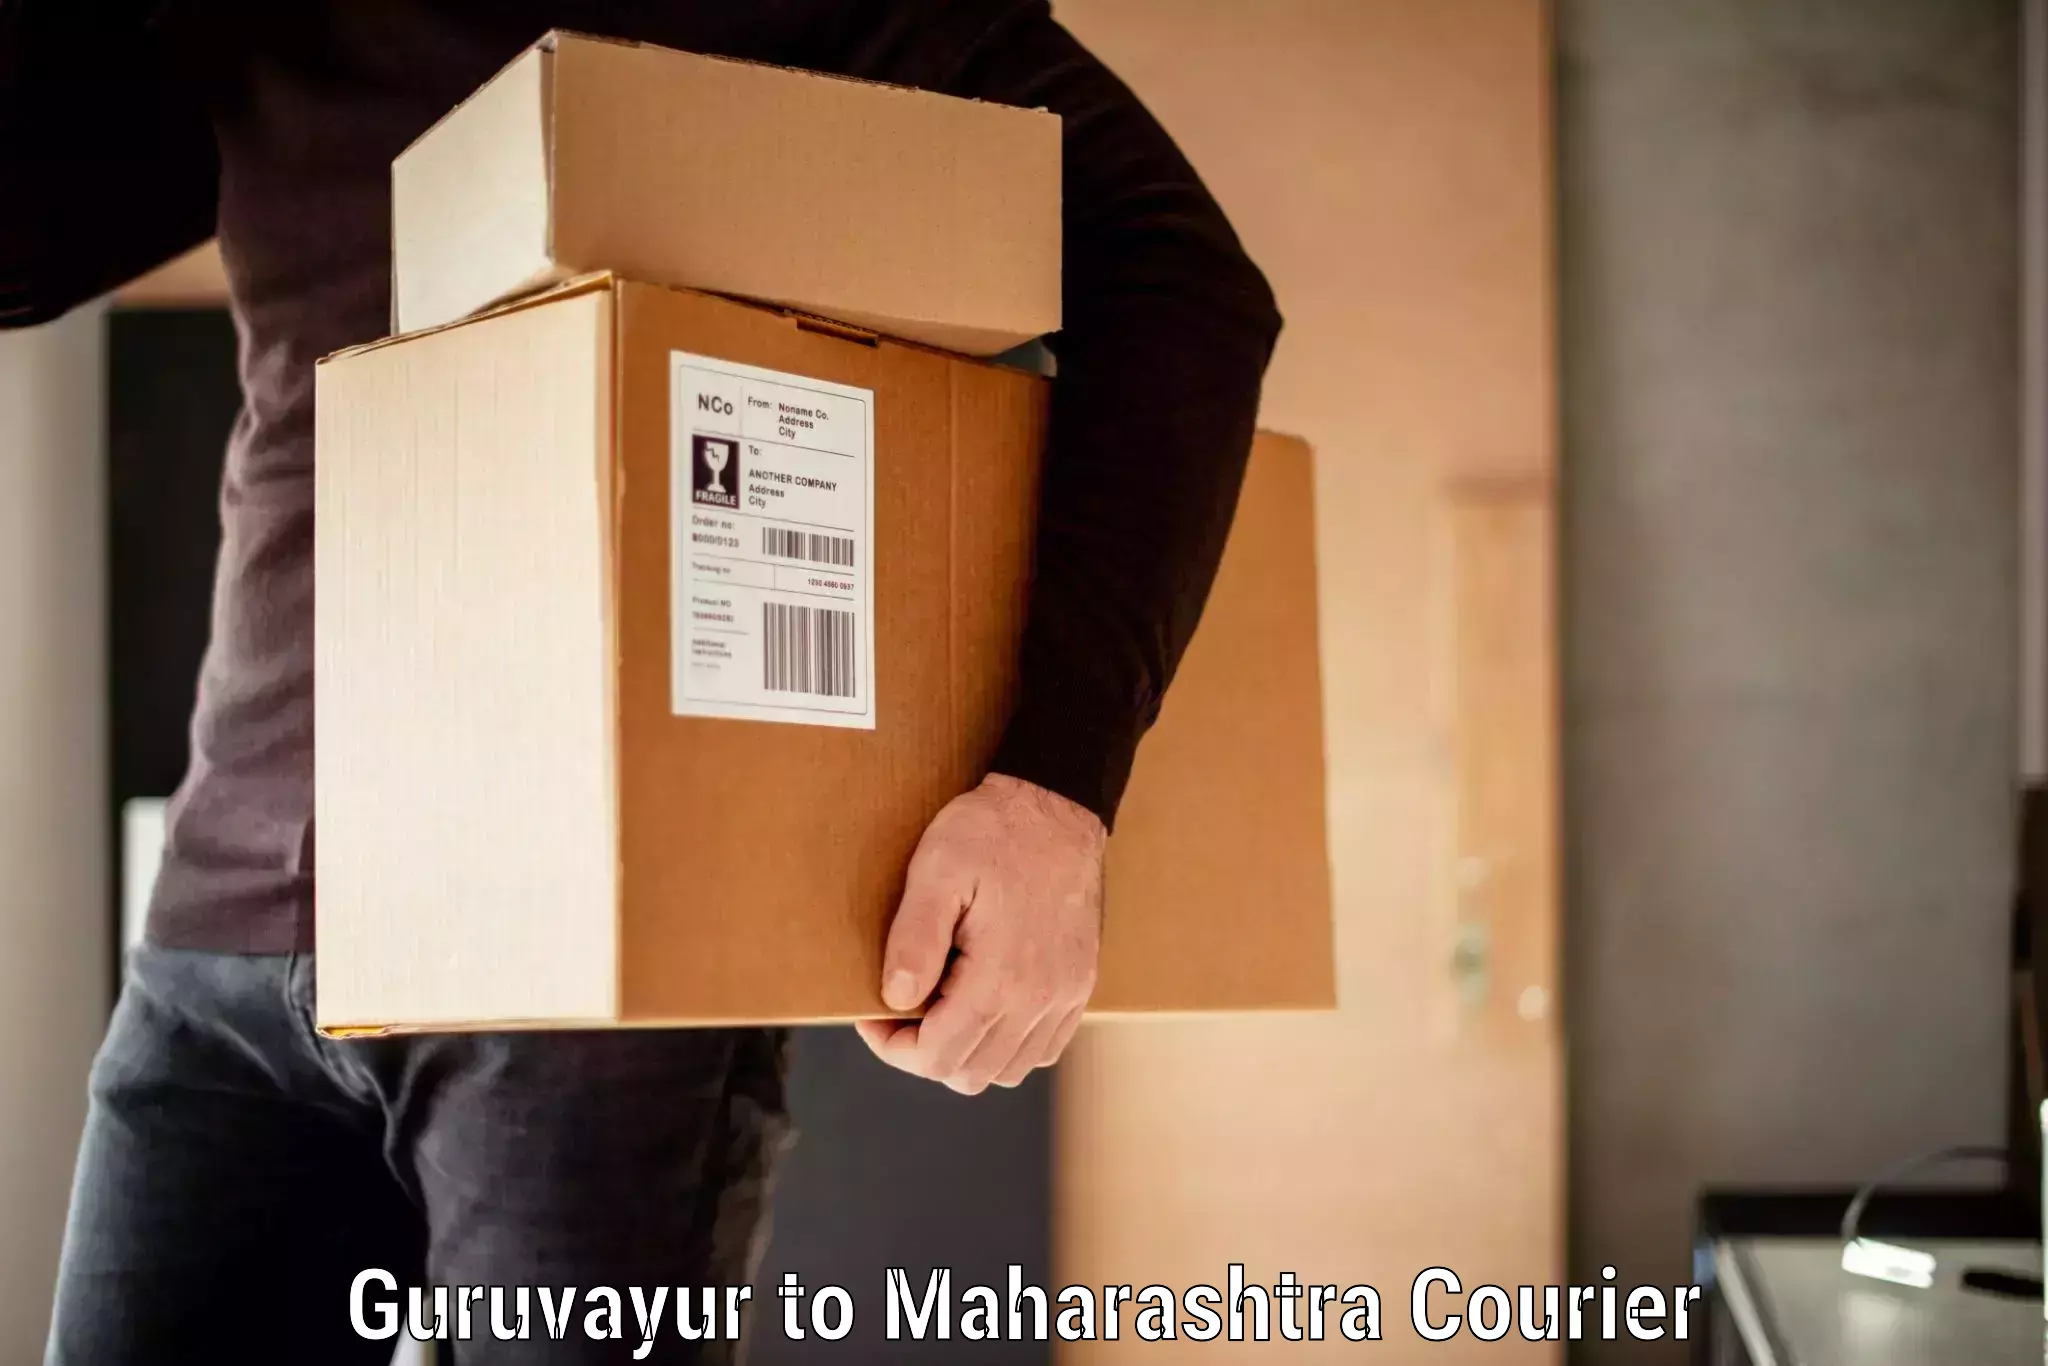 Baggage shipping experts Guruvayur to Palghar